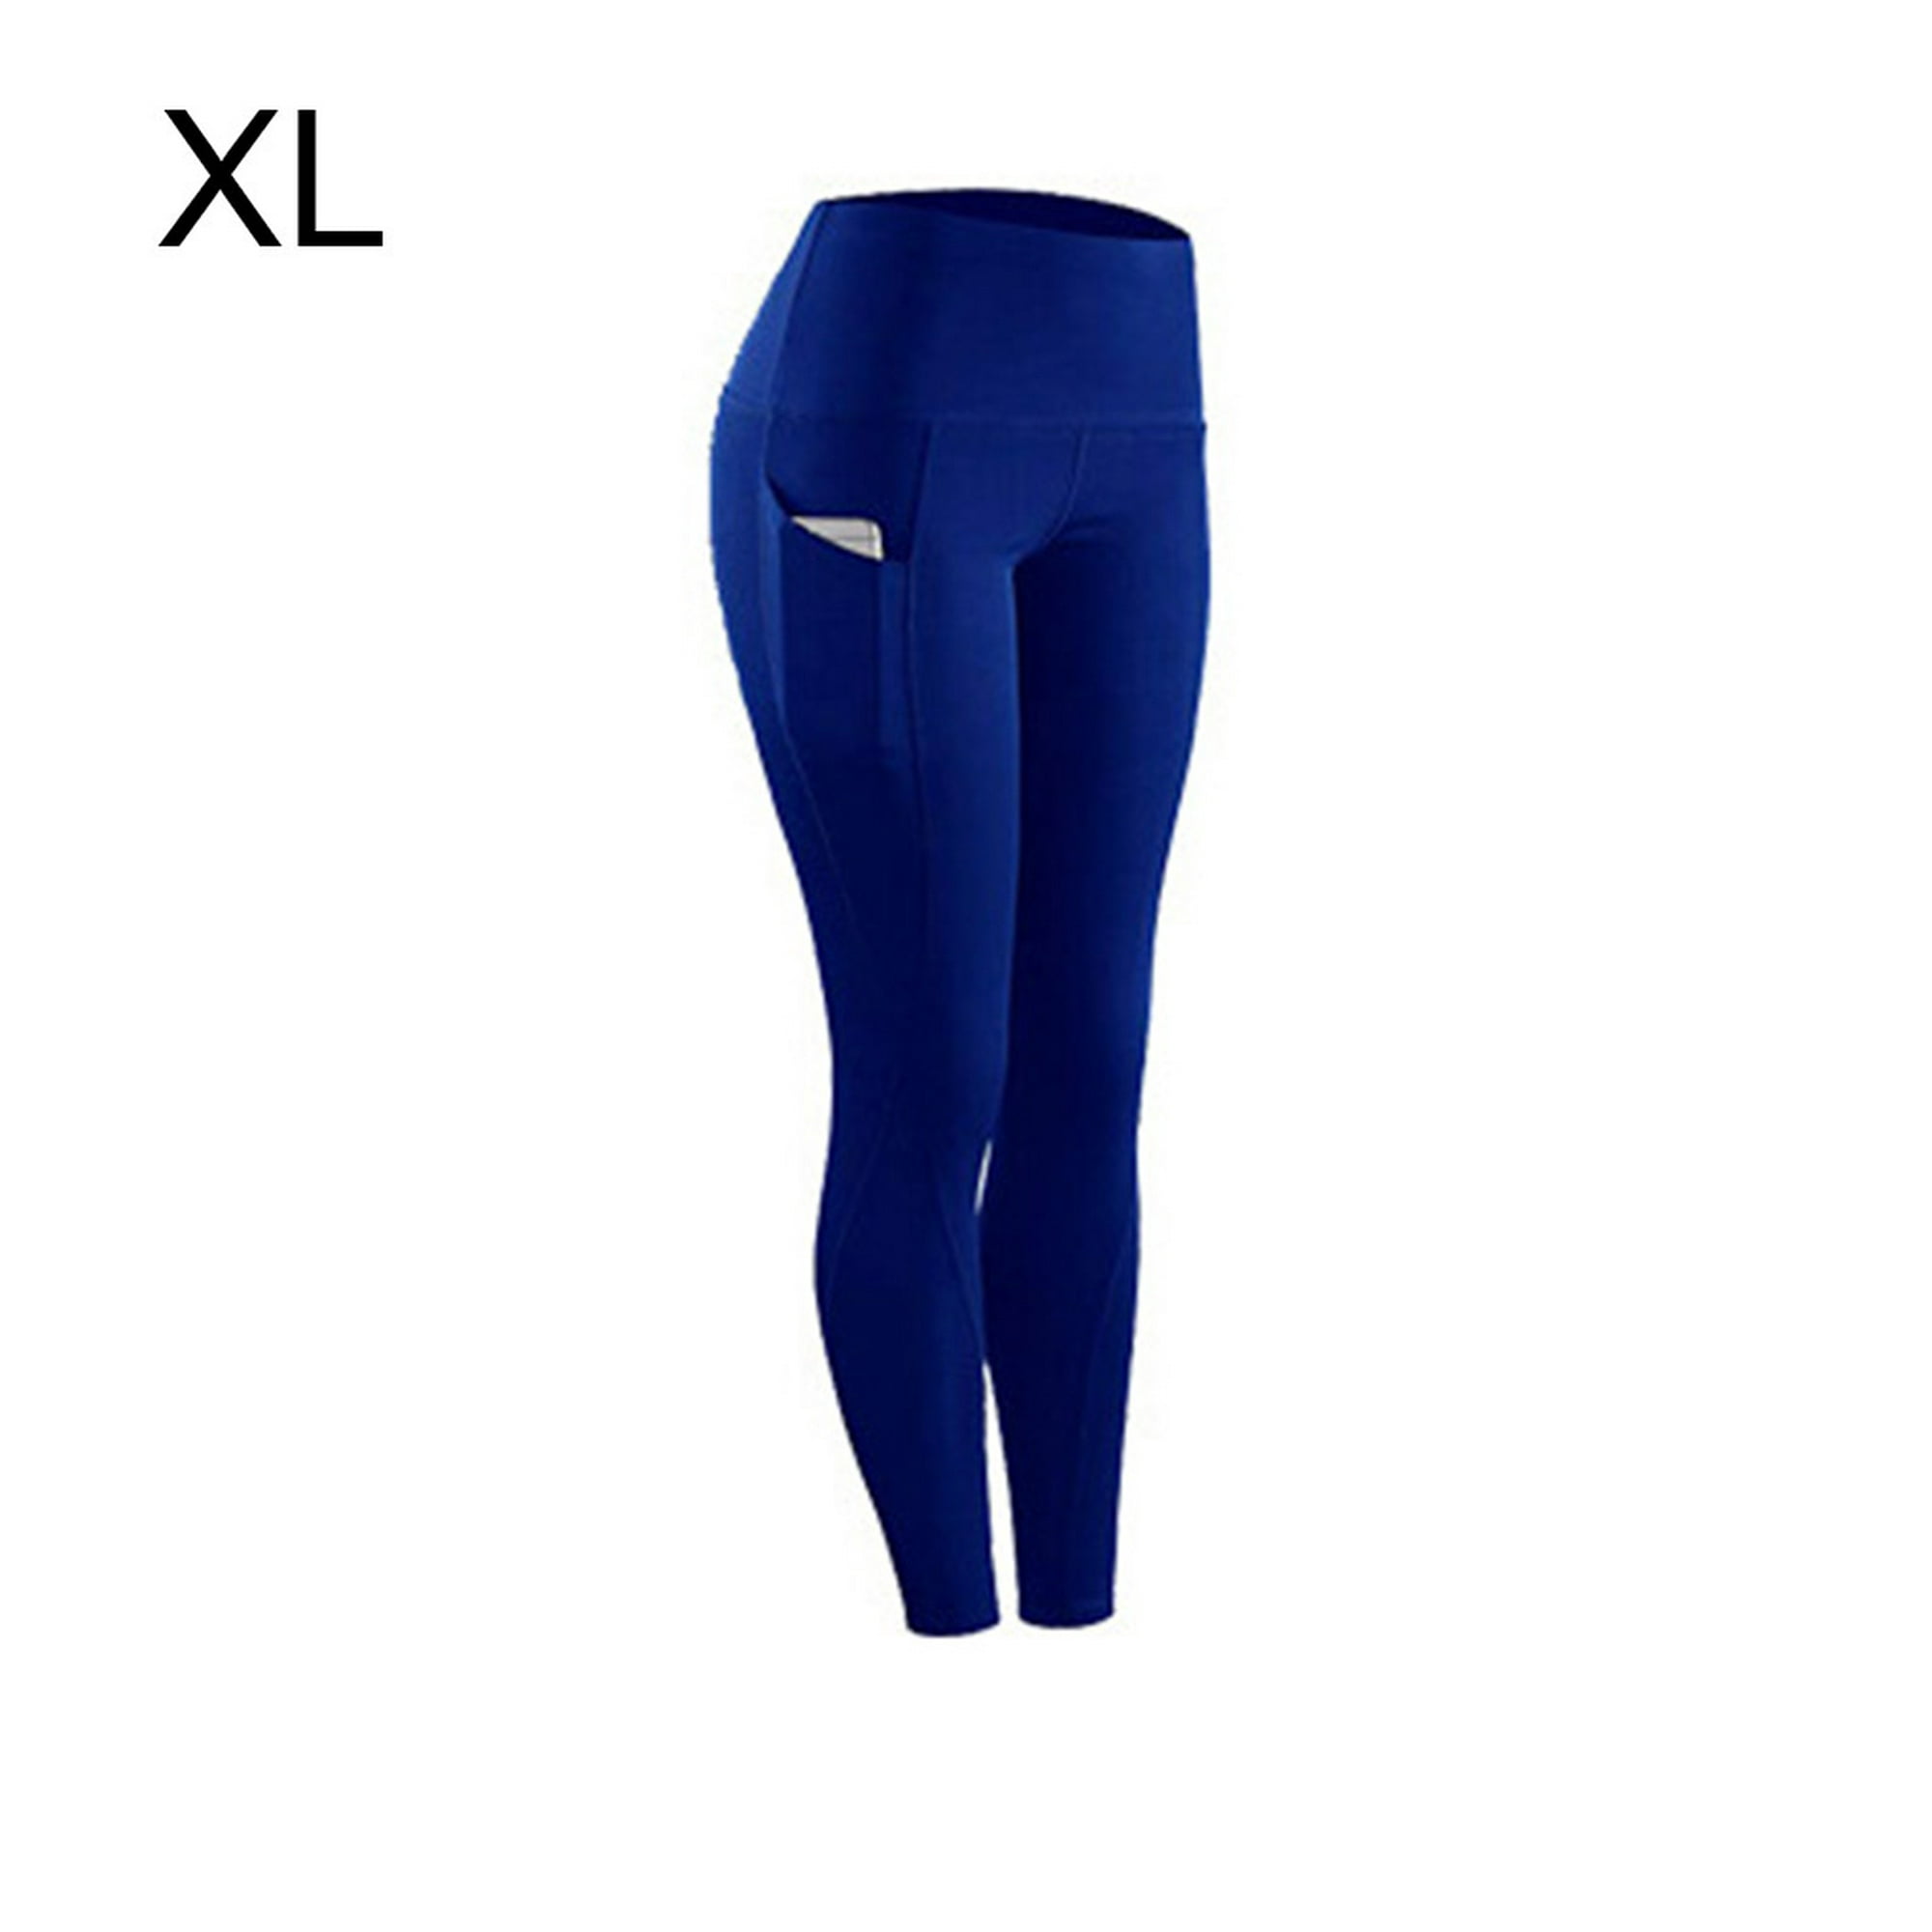 Legging - Pantalones de algodón de licra para yoga, tejido sólido,  elásticos, para mujer